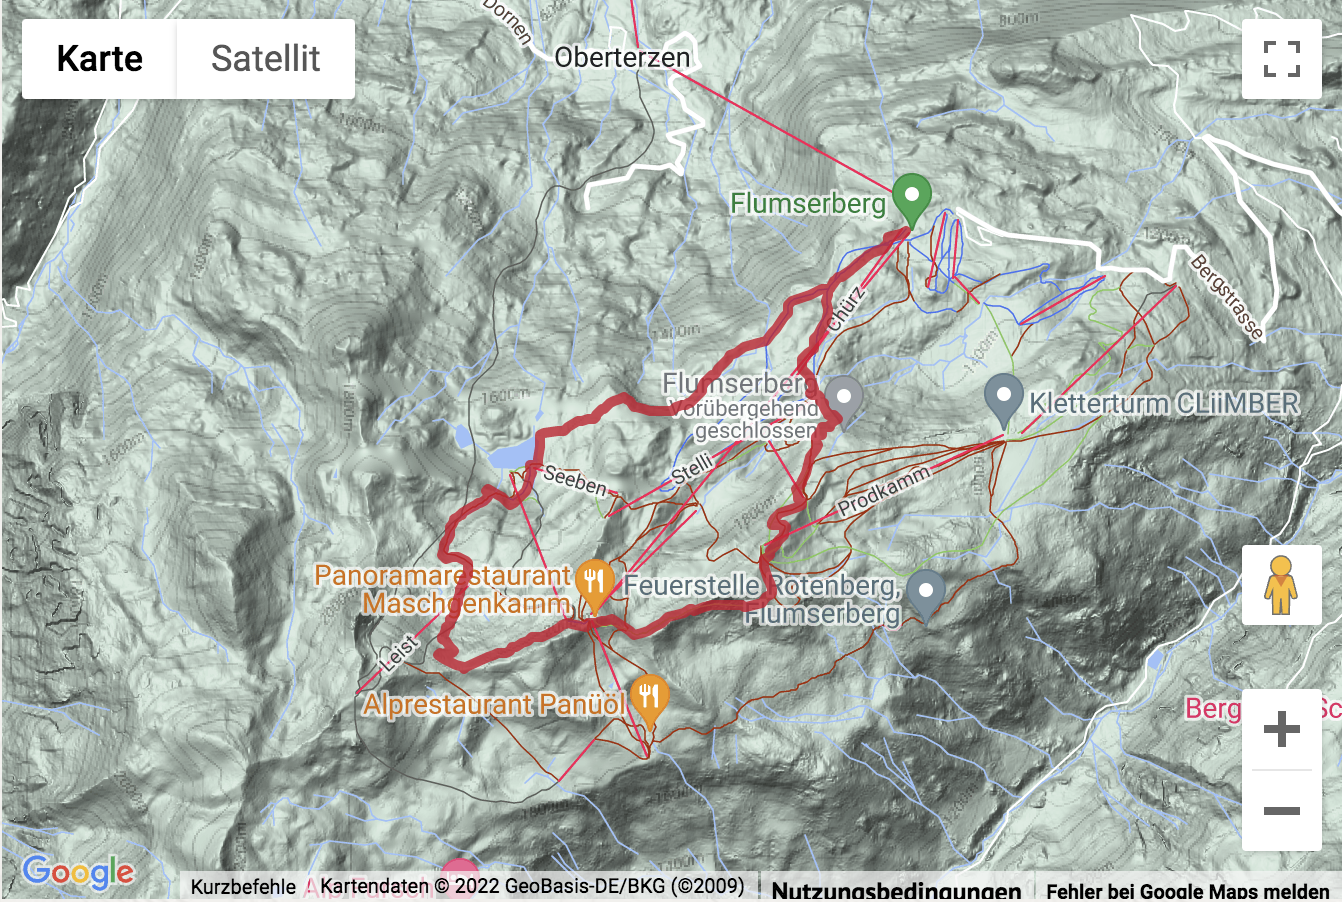 Carte de situation avec l'itinéraire pour la Ronde panoramique à Flumserberg